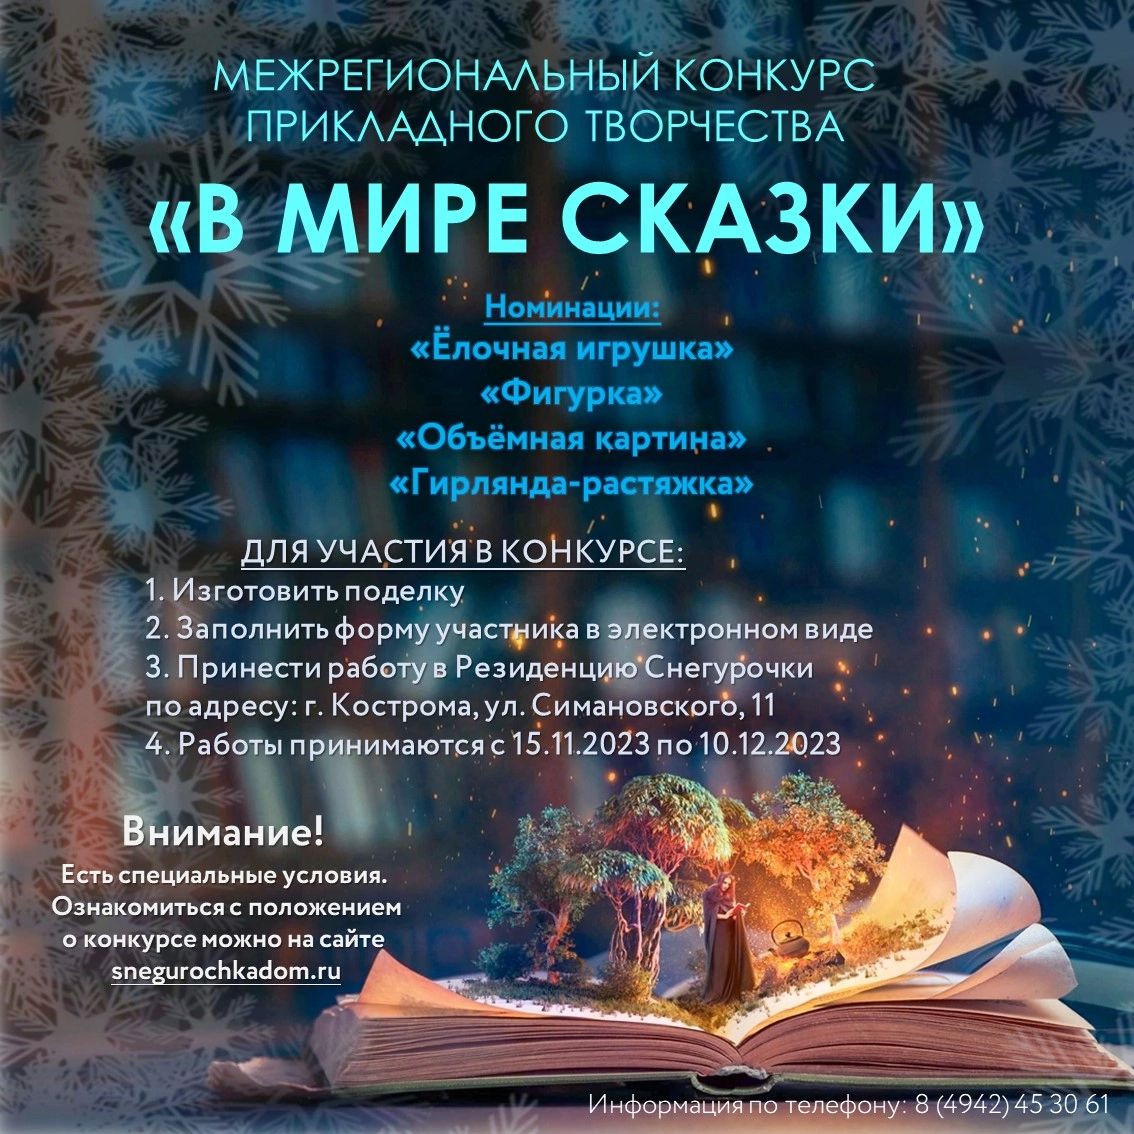 Российская Снегурочка приглашает костромичей на конкурс "В мире сказок"